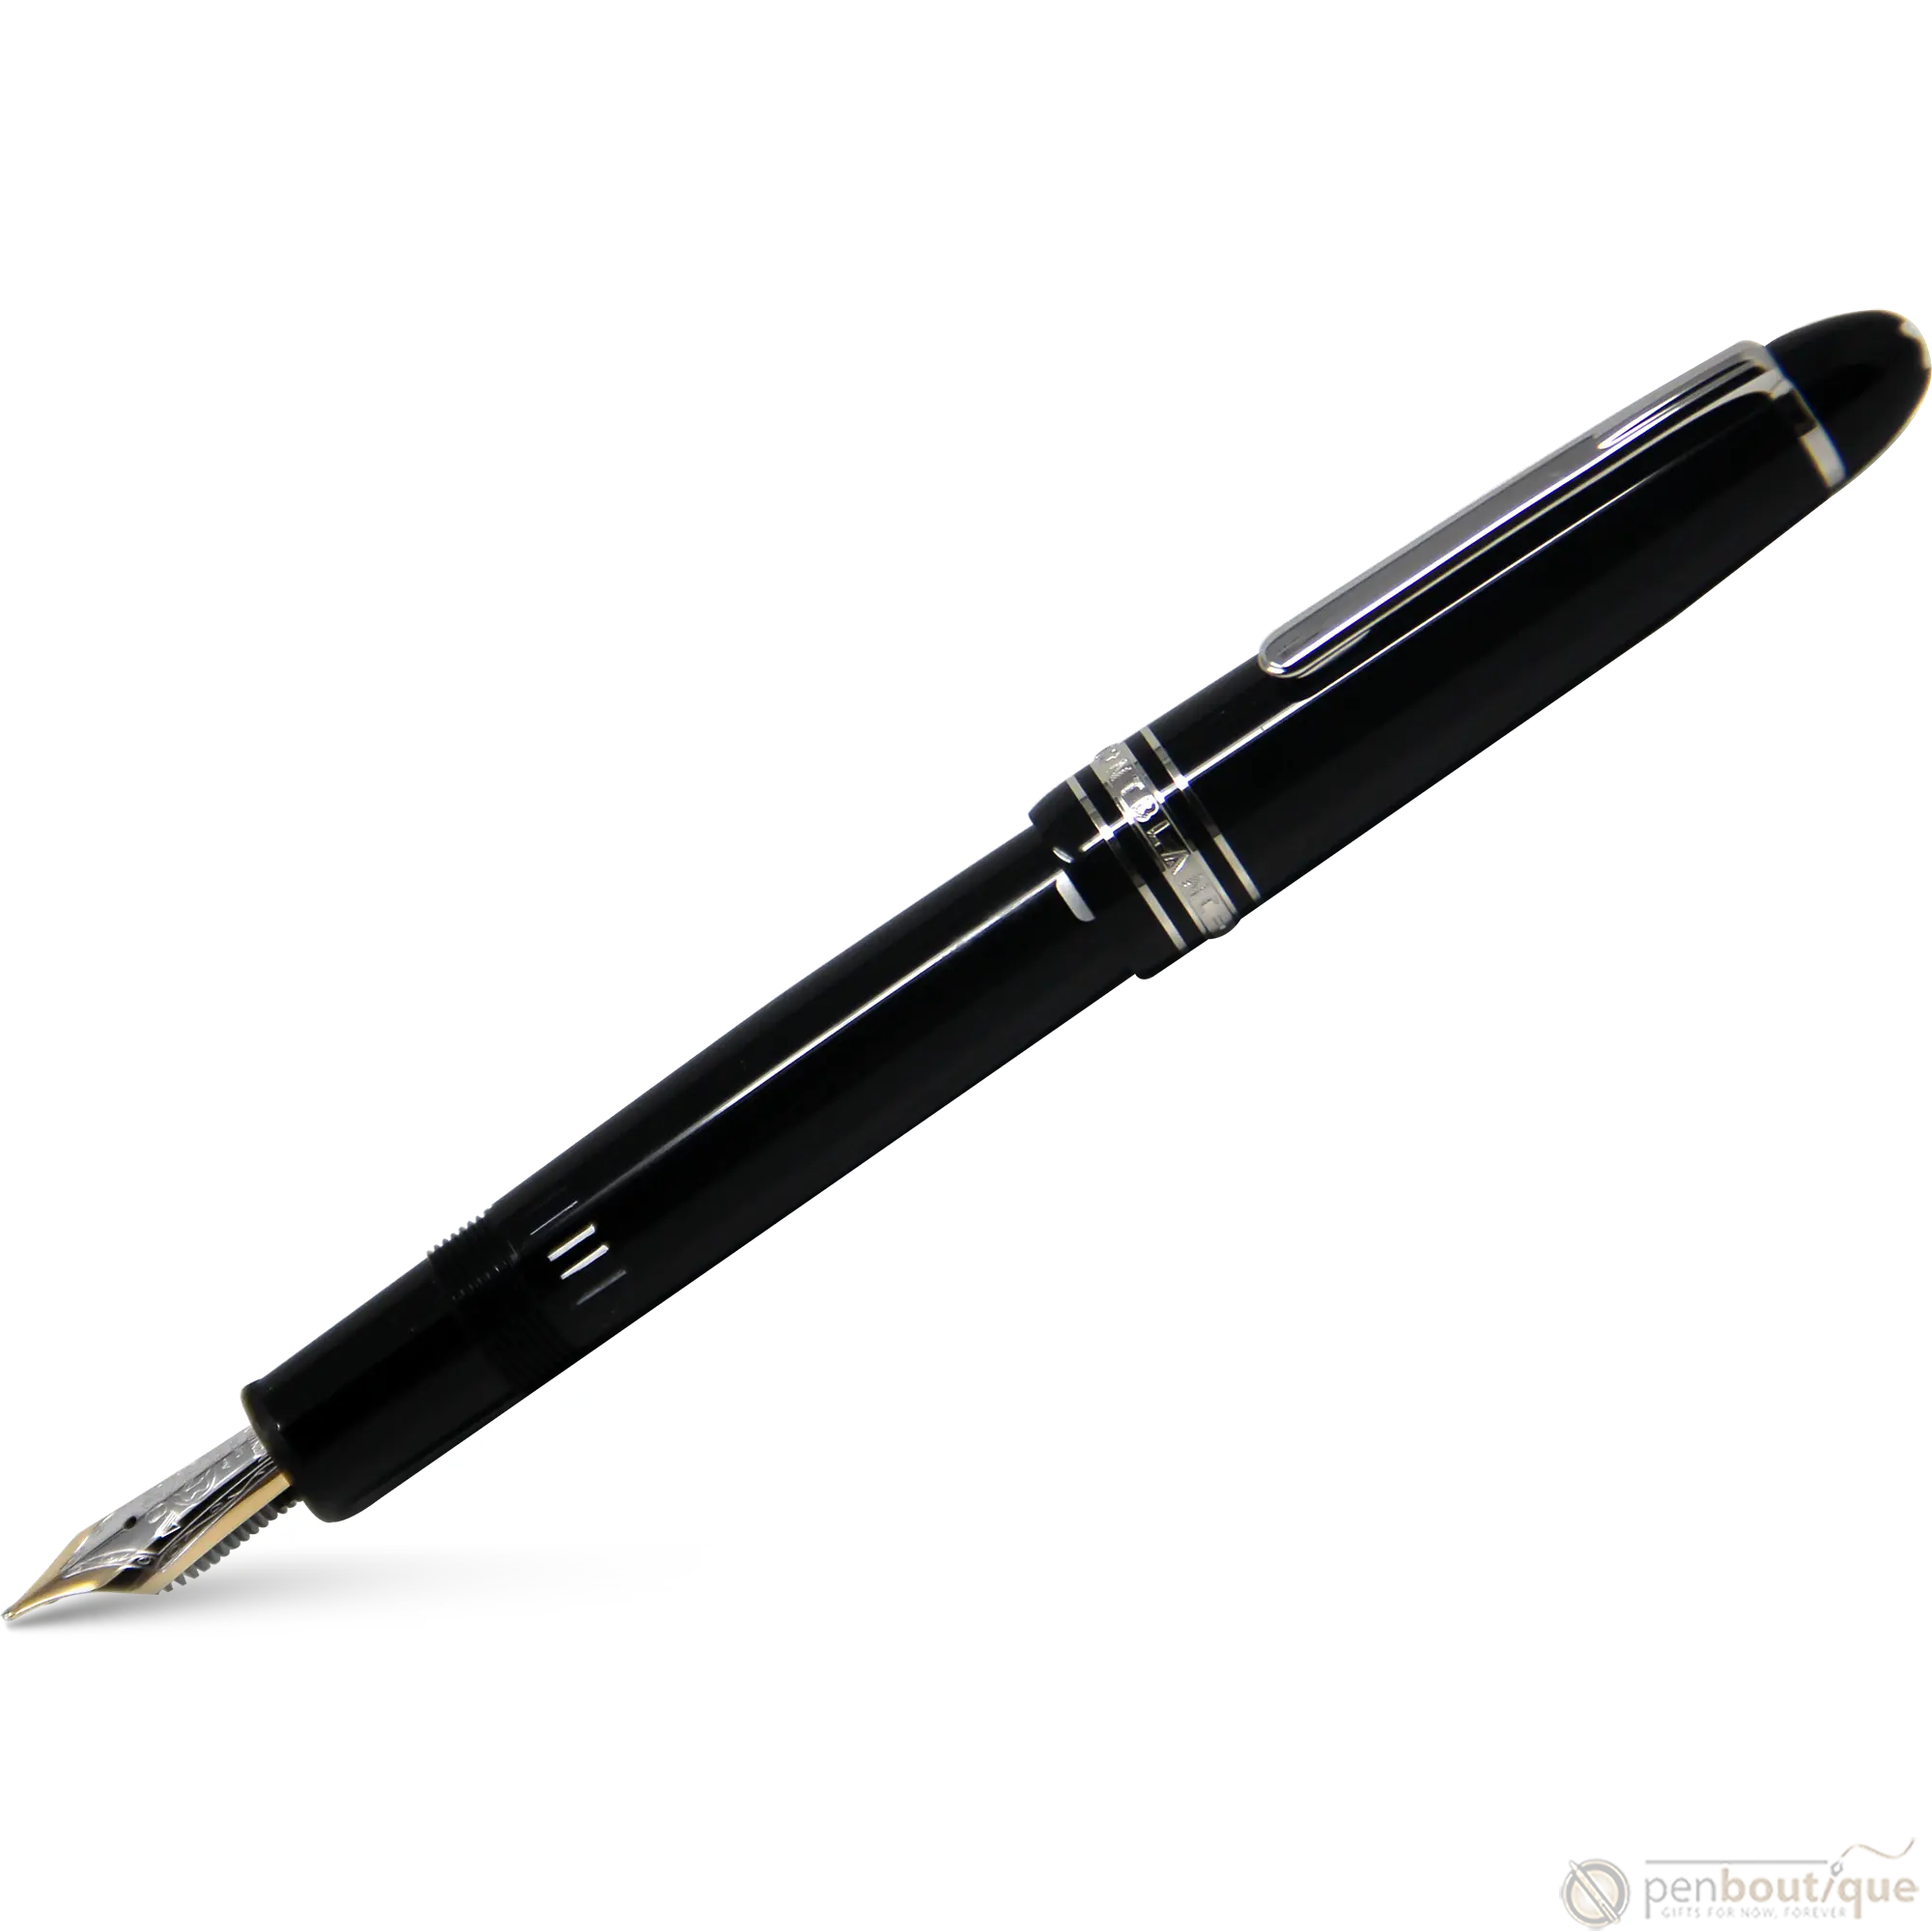 Montblanc Meisterstuck Fountain Pen - Black - Platinum Trim - Legrand - 146 size-Pen Boutique Ltd